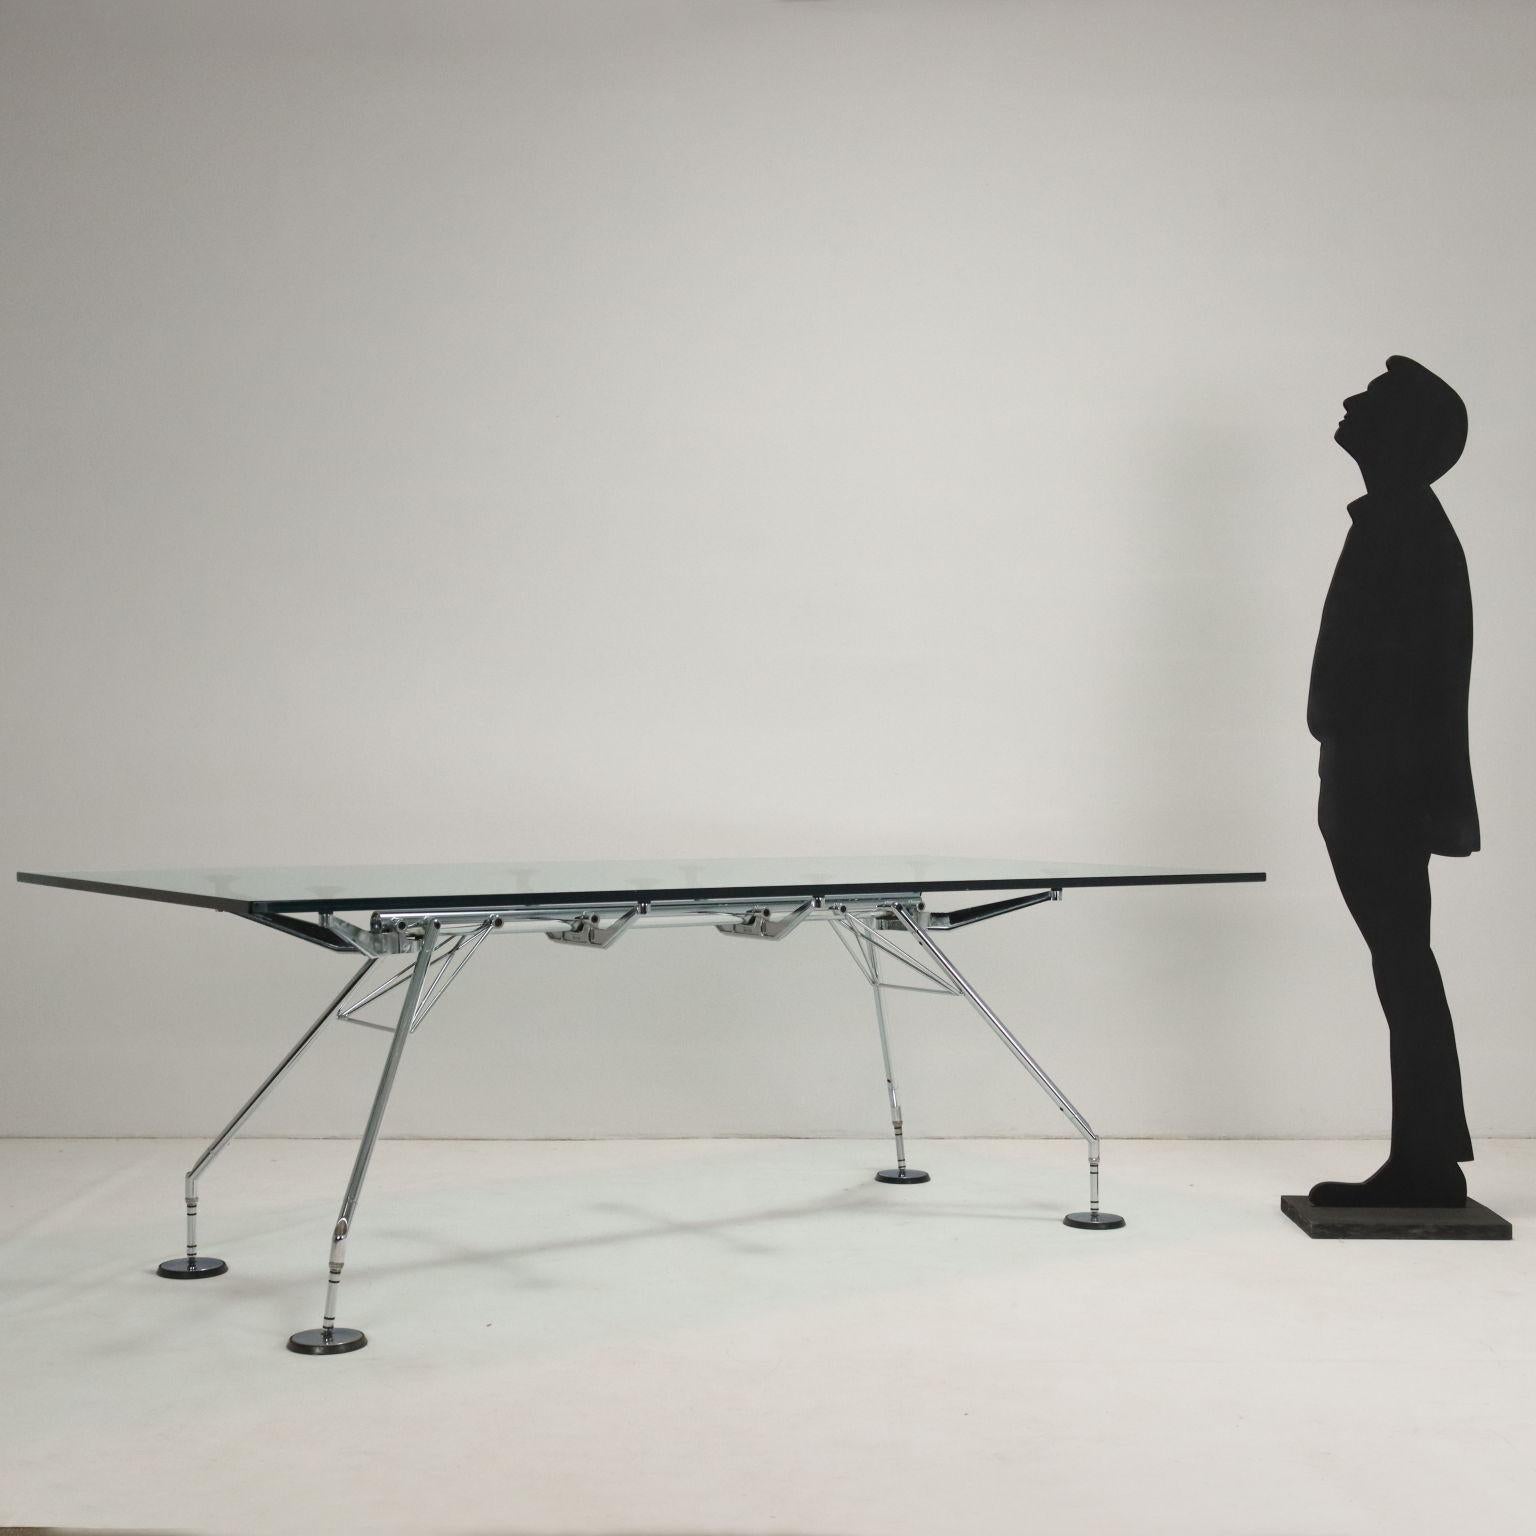 Tavolo con base in metallo cromato e piano in vetro; il tavolo Nomos firmato da Norman Foster è stato vincitore del prestigioso 'Compasso d'Oro' nel 1987, è un tavolo che colpisce per la sua struttura unica e dall'estetica zoomorfica, il solido